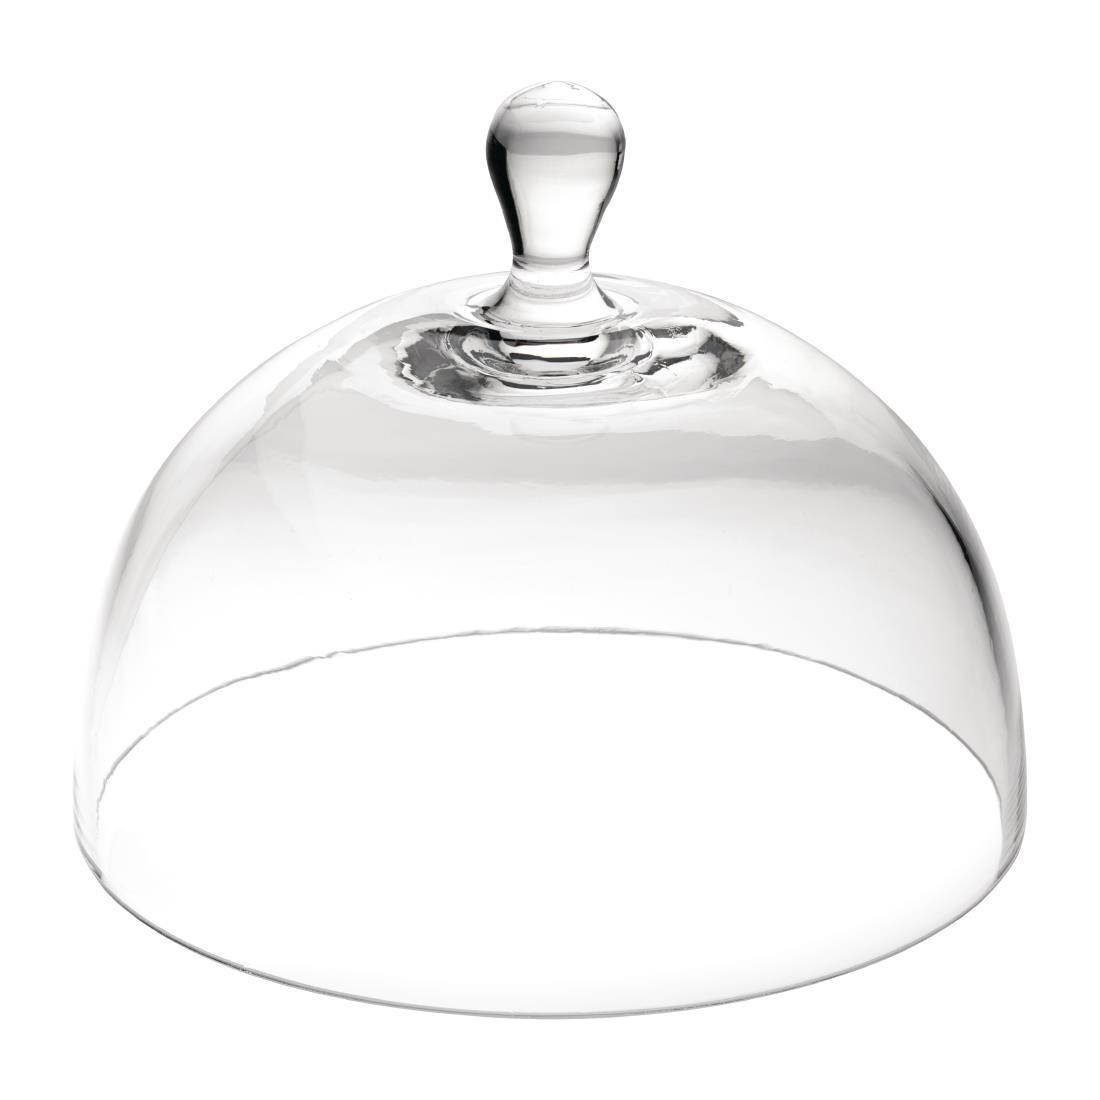 Utopia Large Glass Cloche - CW552  - 1